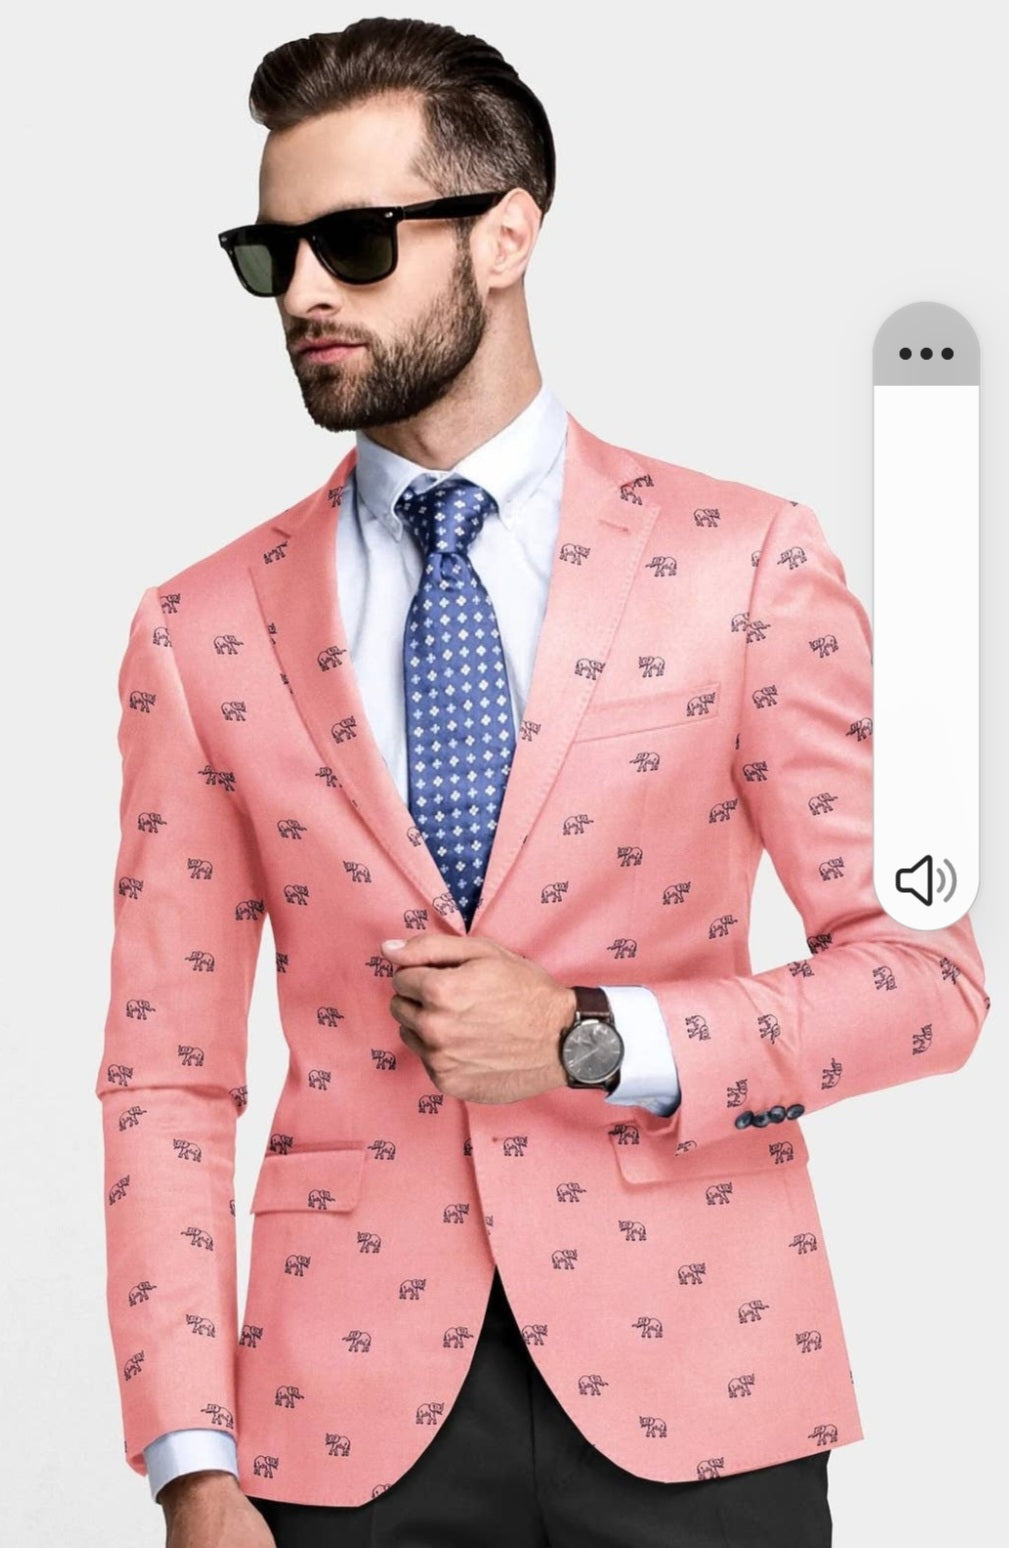 Peach Men's Two Button Dress Party Elephant Print Suit Jacket Notched Lapel Slim Fit Stylish Blazer